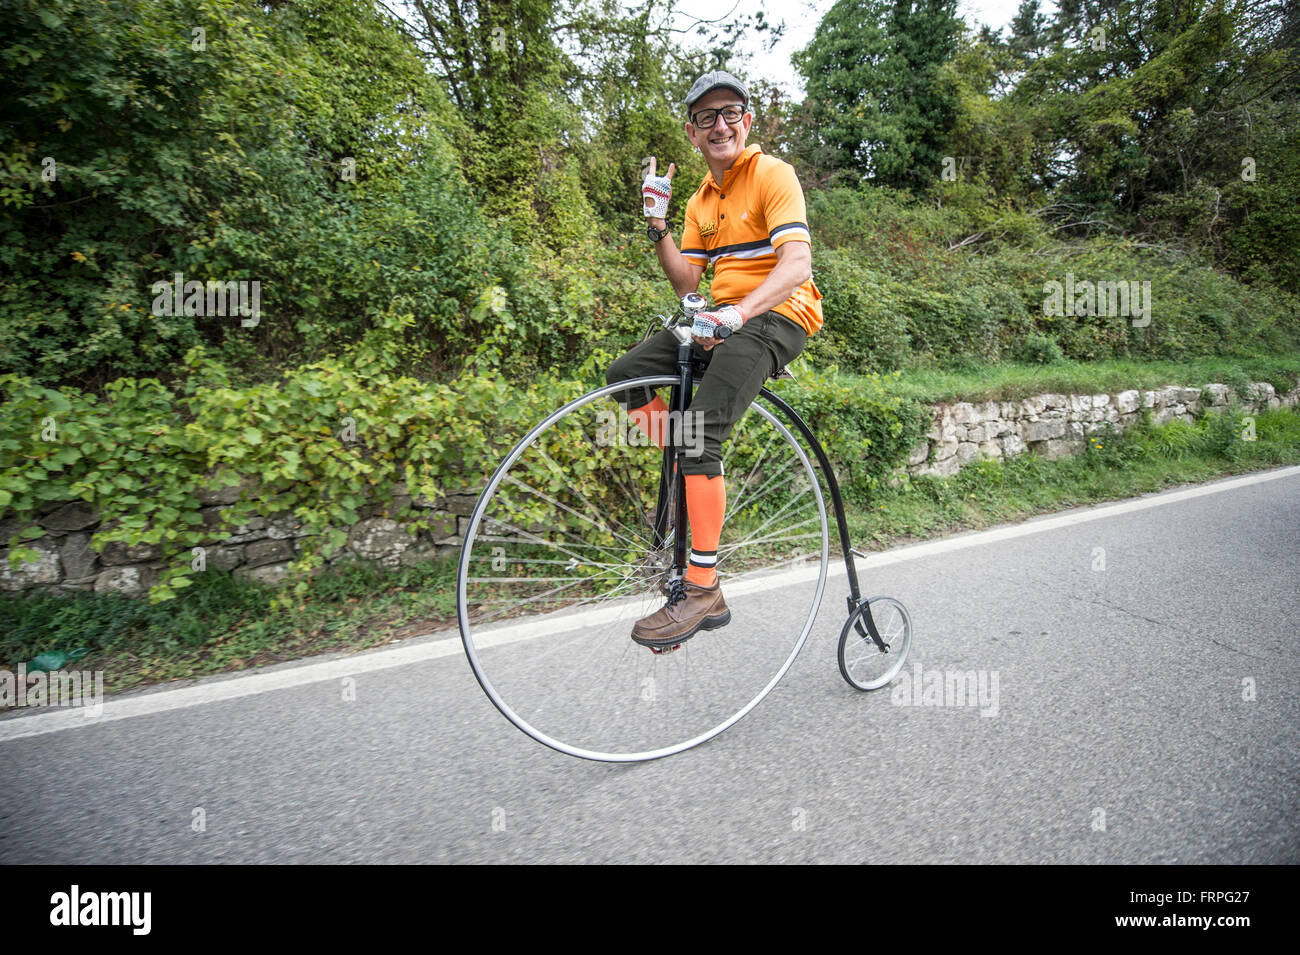 Un vélocipède, ancêtre de la bicyclette, à la course. L'Eroica est une épreuve cycliste qui se déroule depuis 1997 dans la province de Sienne avec les routes qui se produisent essentiellement sur des chemins de terre avec des vélos vintage. Habituellement, il a tenu le premier dimanche d'octobre. Banque D'Images